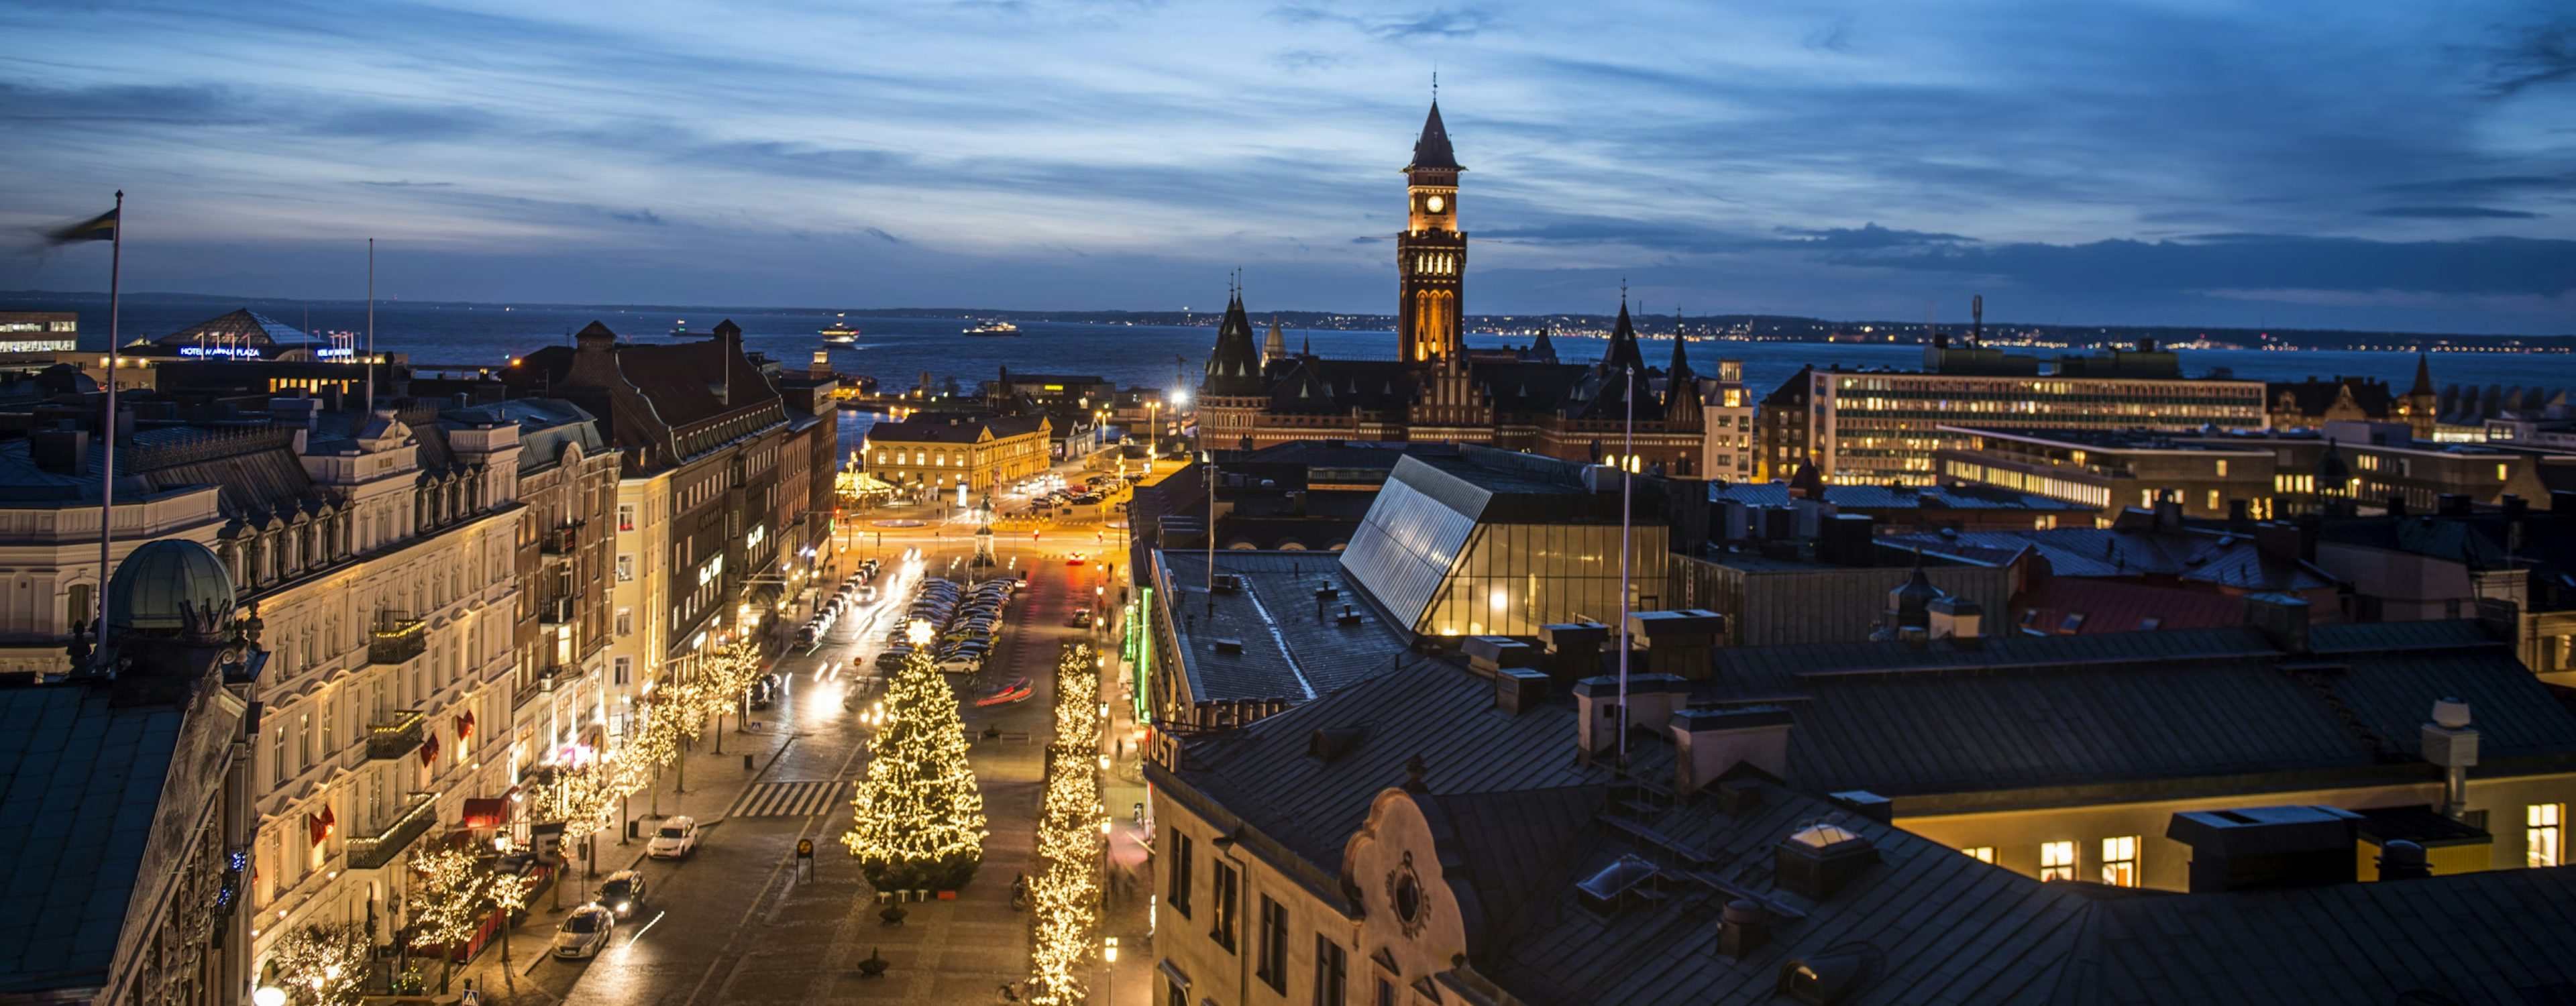 Kvällsvy över Helsingborgs stadskärna med julbelysning längs gatorna och utsikt över Öresund